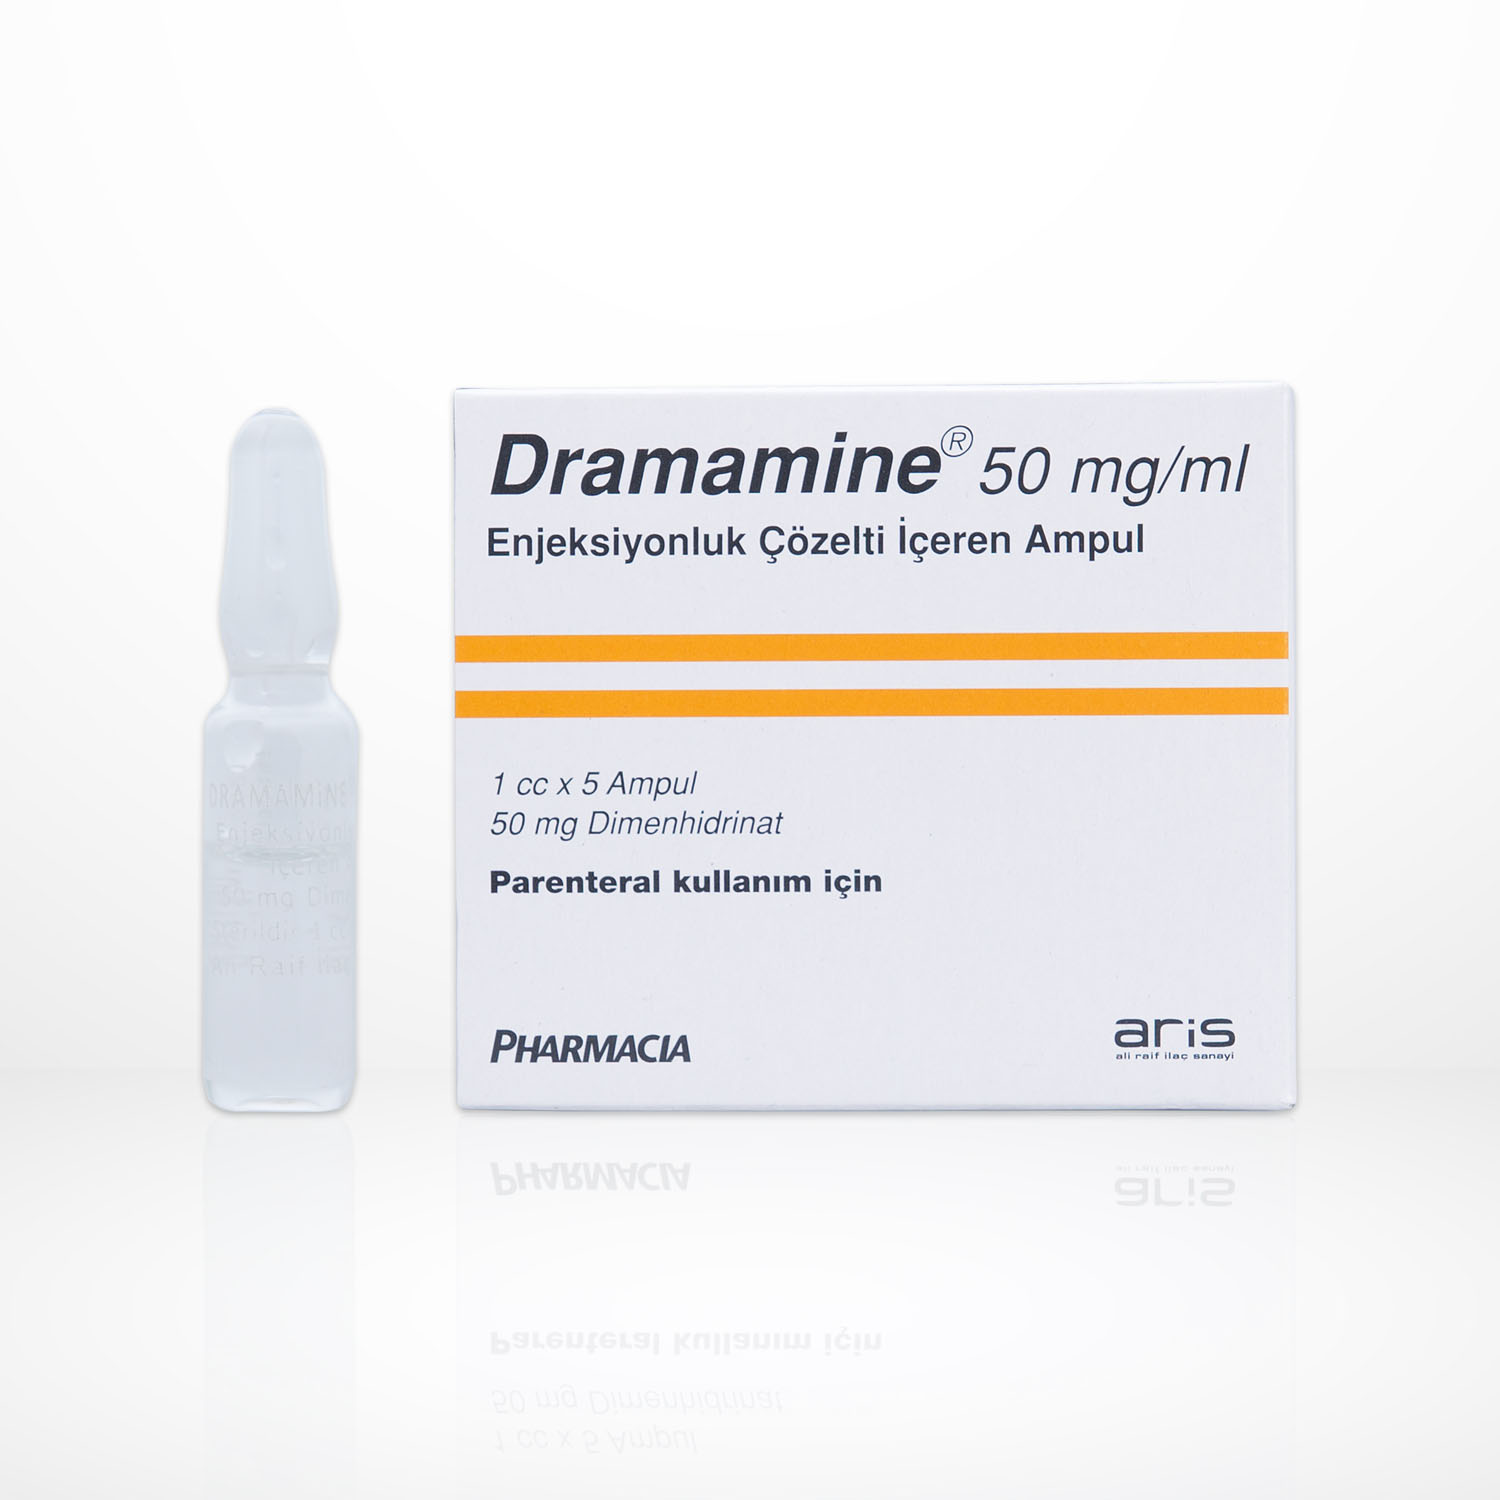 DRAMAMINE 50 mg/ml Enjeksiyonluk Çözelti İçeren Ampul ARİS Resmi